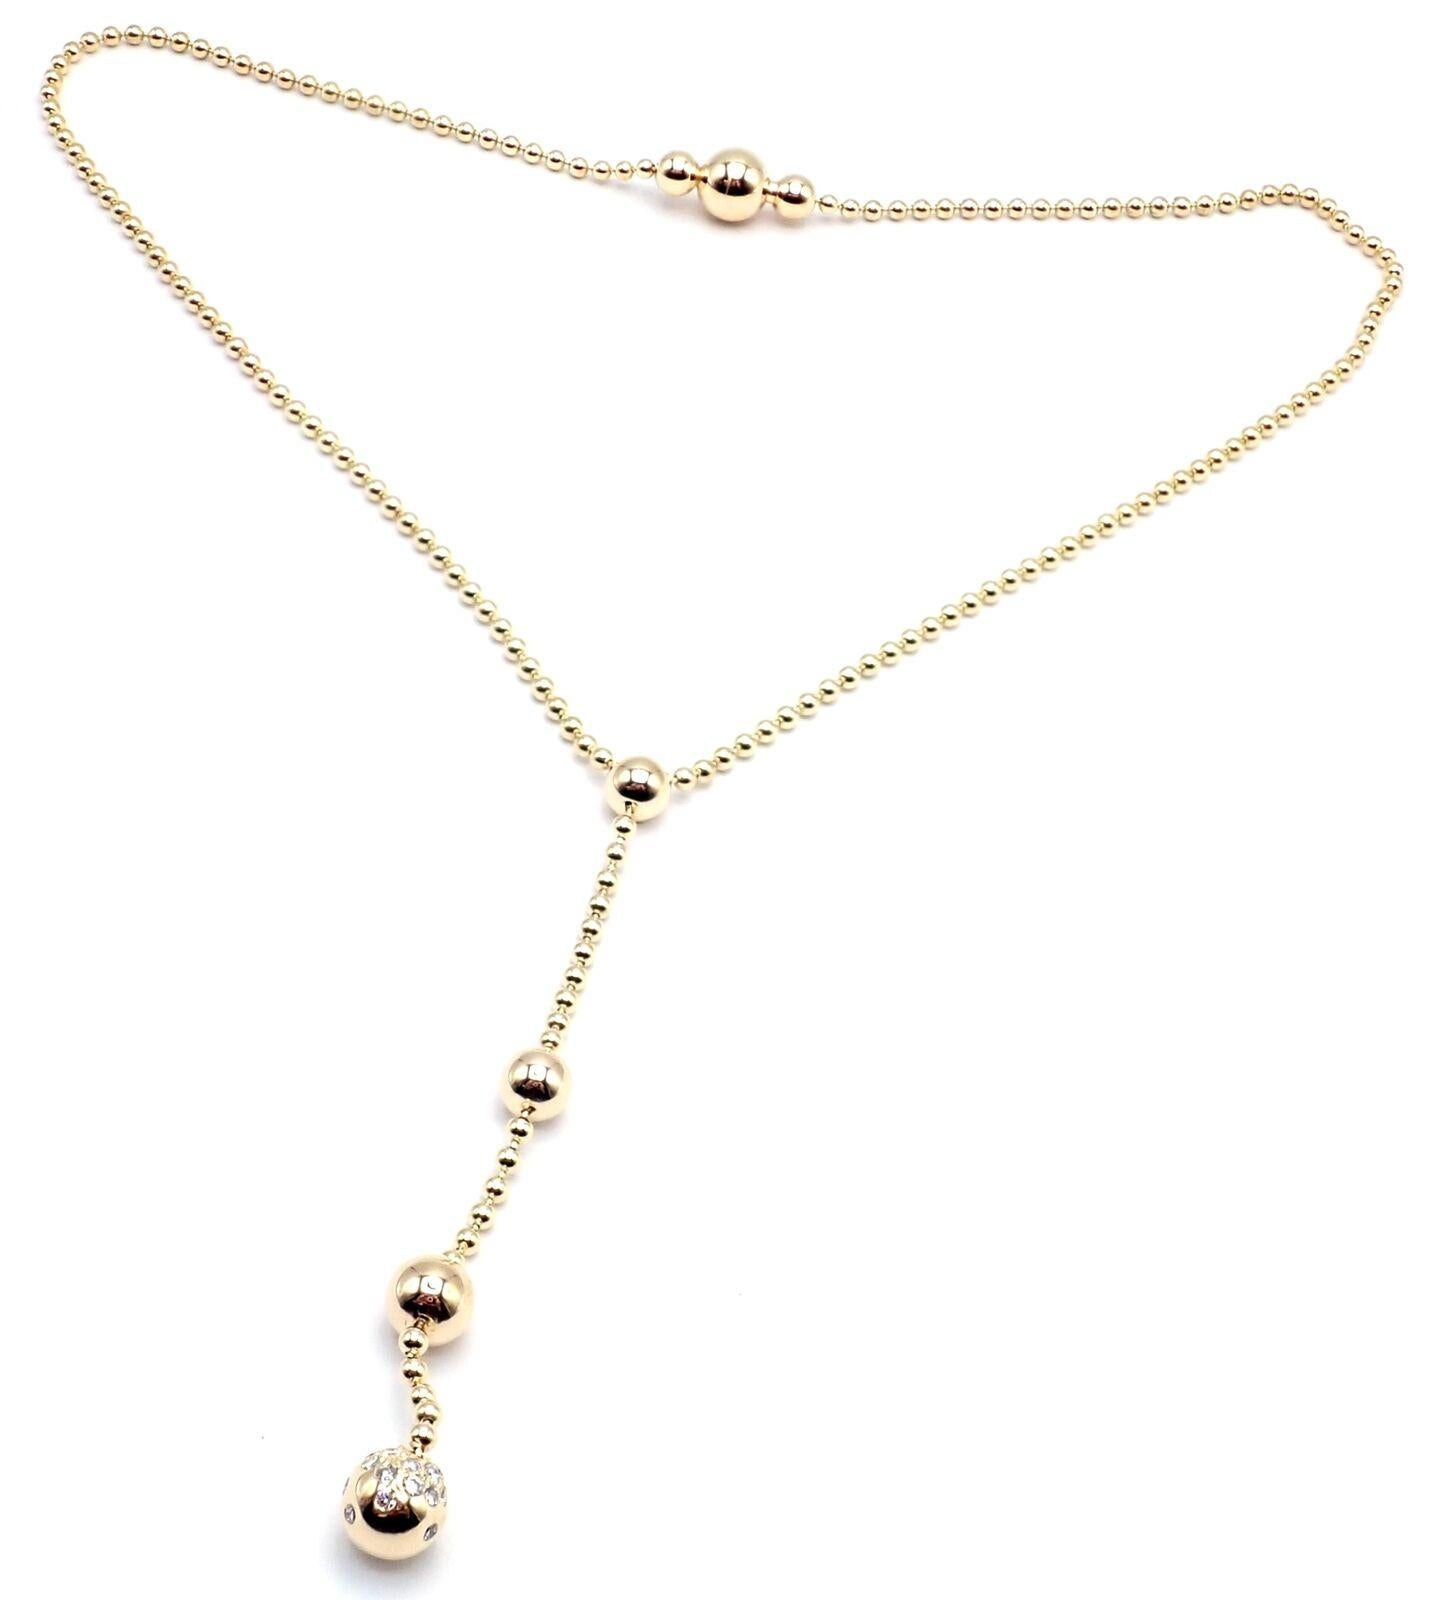 18k Gelbgold Diamant Draperie  de Decolette Halskette mit einem Tropfen von Cartier.
Mit runden Diamanten im Brillantschliff VVS1 Klarheit, E Farbe Diamanten Gesamtgewicht ca. .58ct
Einzelheiten:
Länge: 15,5